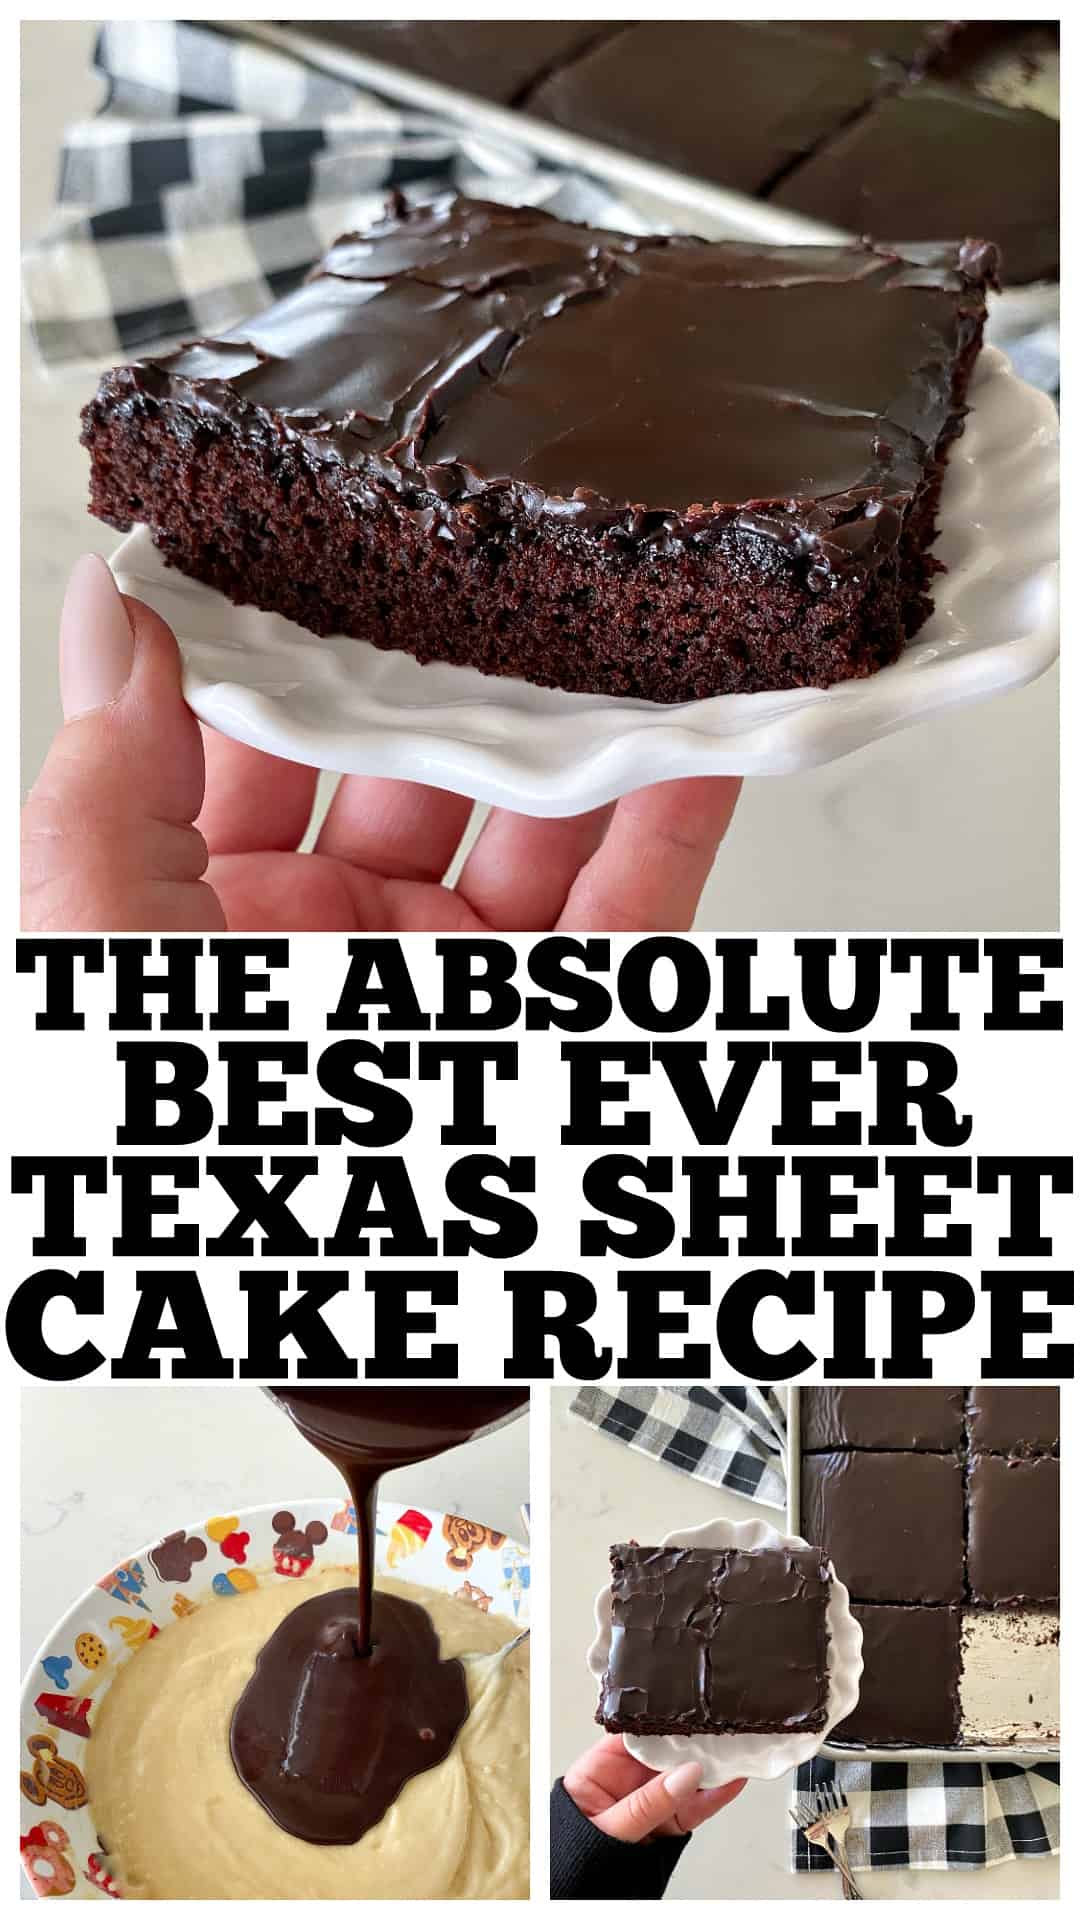 Best Texas Sheet Cake Recipe - Dessert for Two